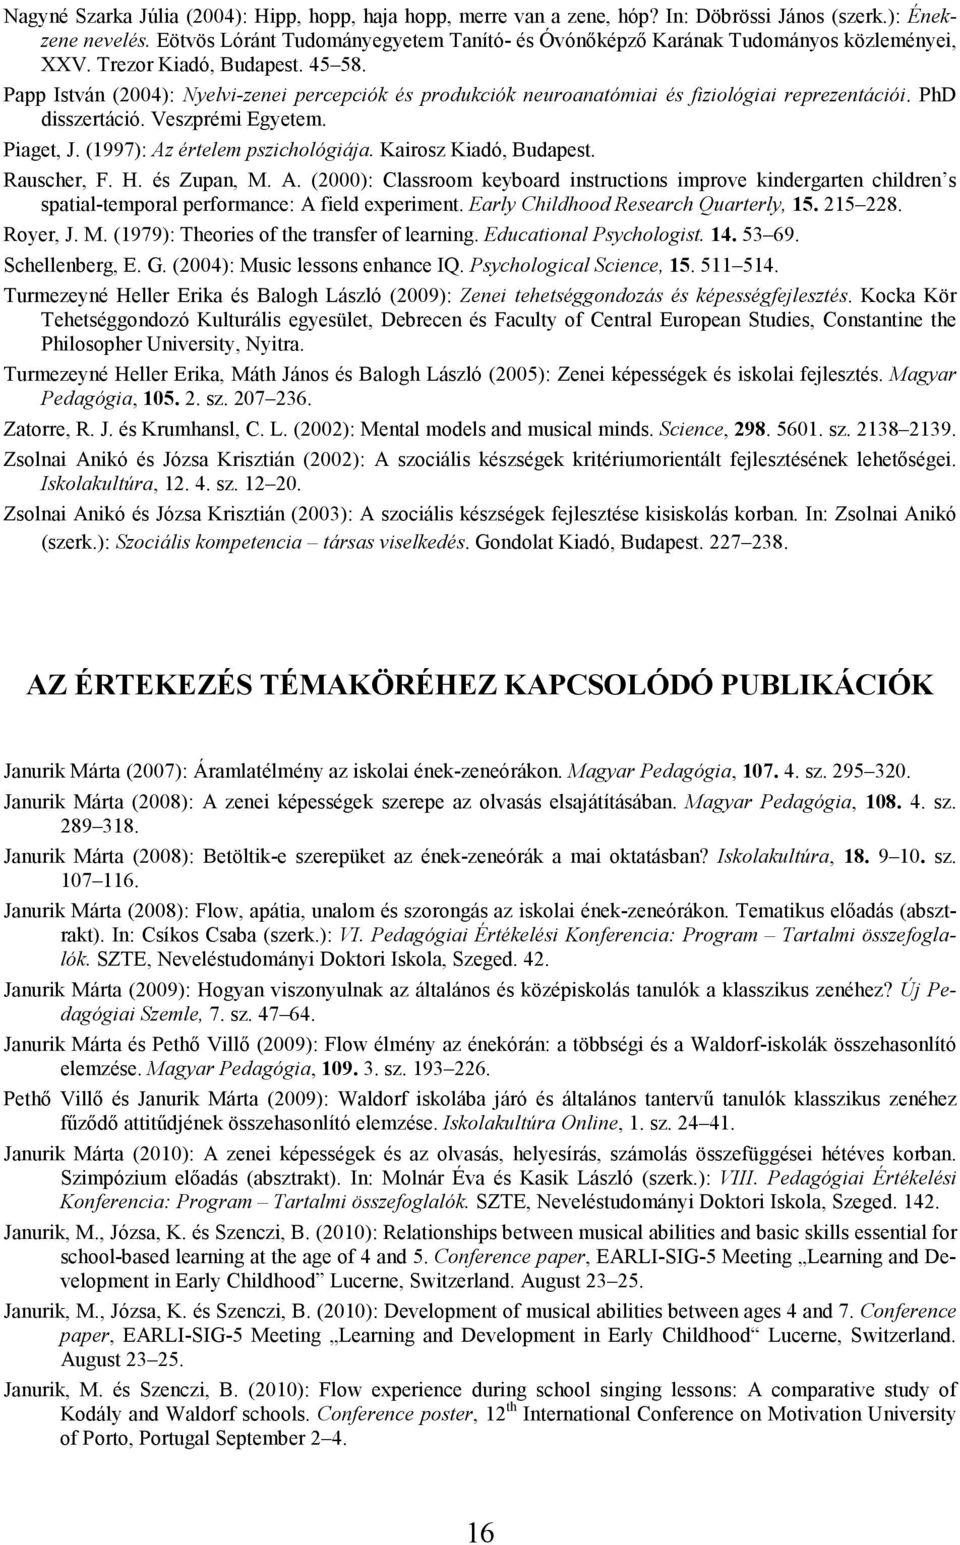 Papp István (2004): Nyelvi-zenei percepciók és produkciók neuroanatómiai és fiziológiai reprezentációi. PhD disszertáció. Veszprémi Egyetem. Piaget, J. (1997): Az értelem pszichológiája.